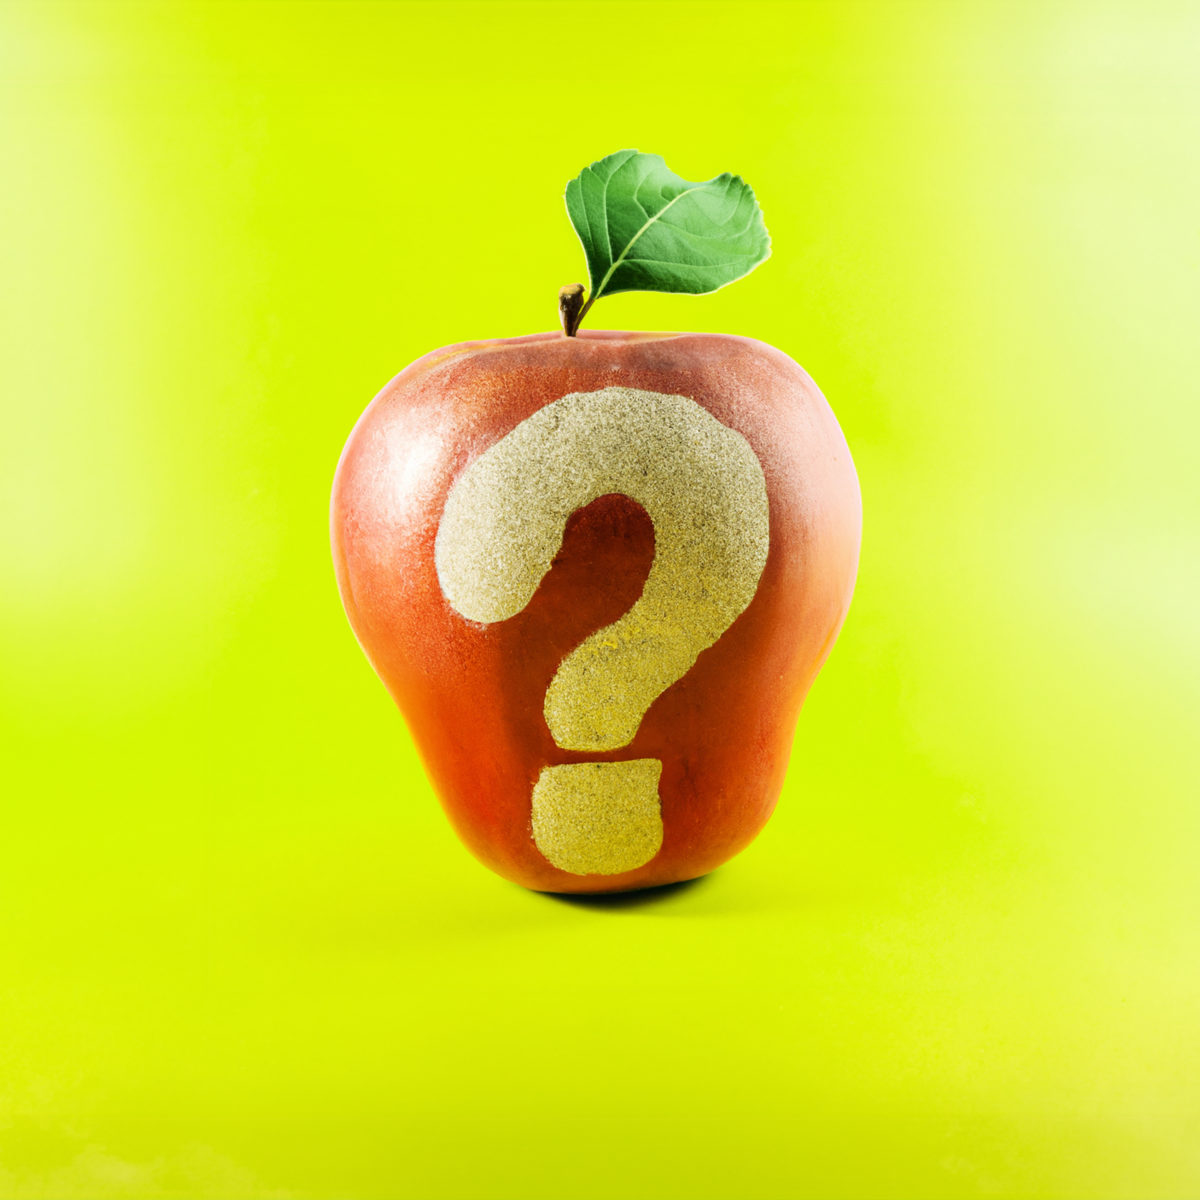 Pomme rouge avec un point d'interrogation sans peau, sur fond vert pomme.